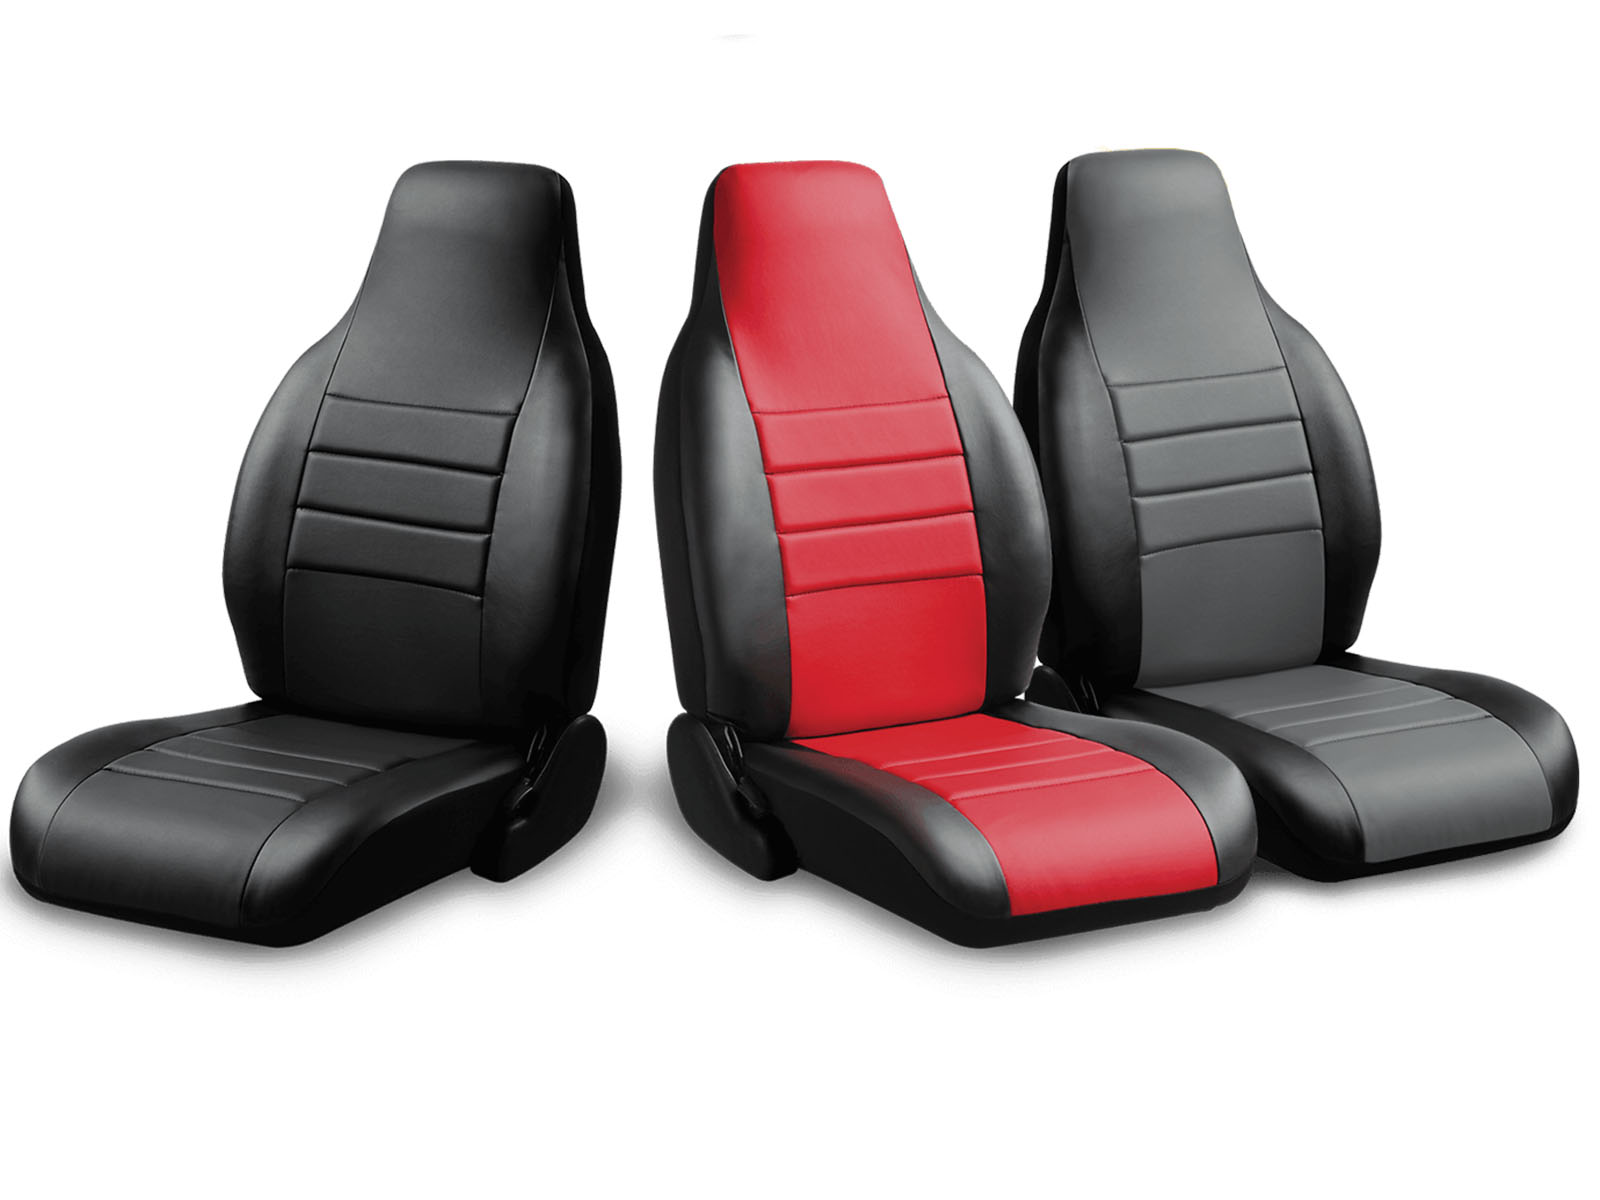 2022 Honda Civic Seat Covers RealTruck